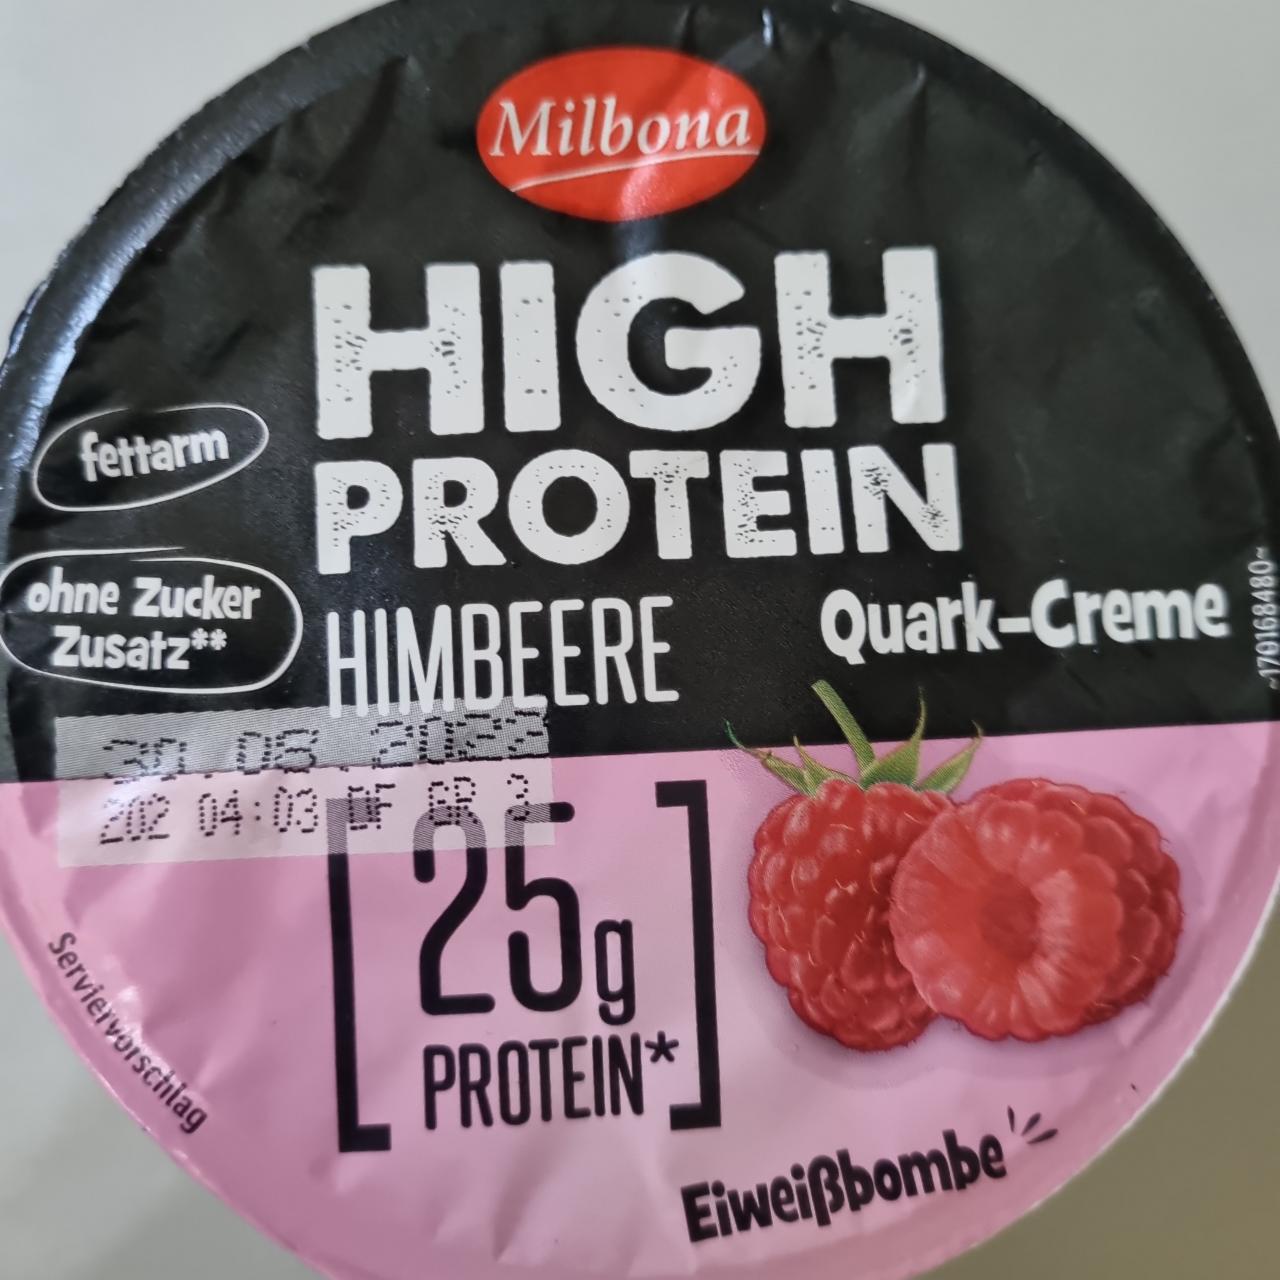 Фото - High-protein himbeere Milbona